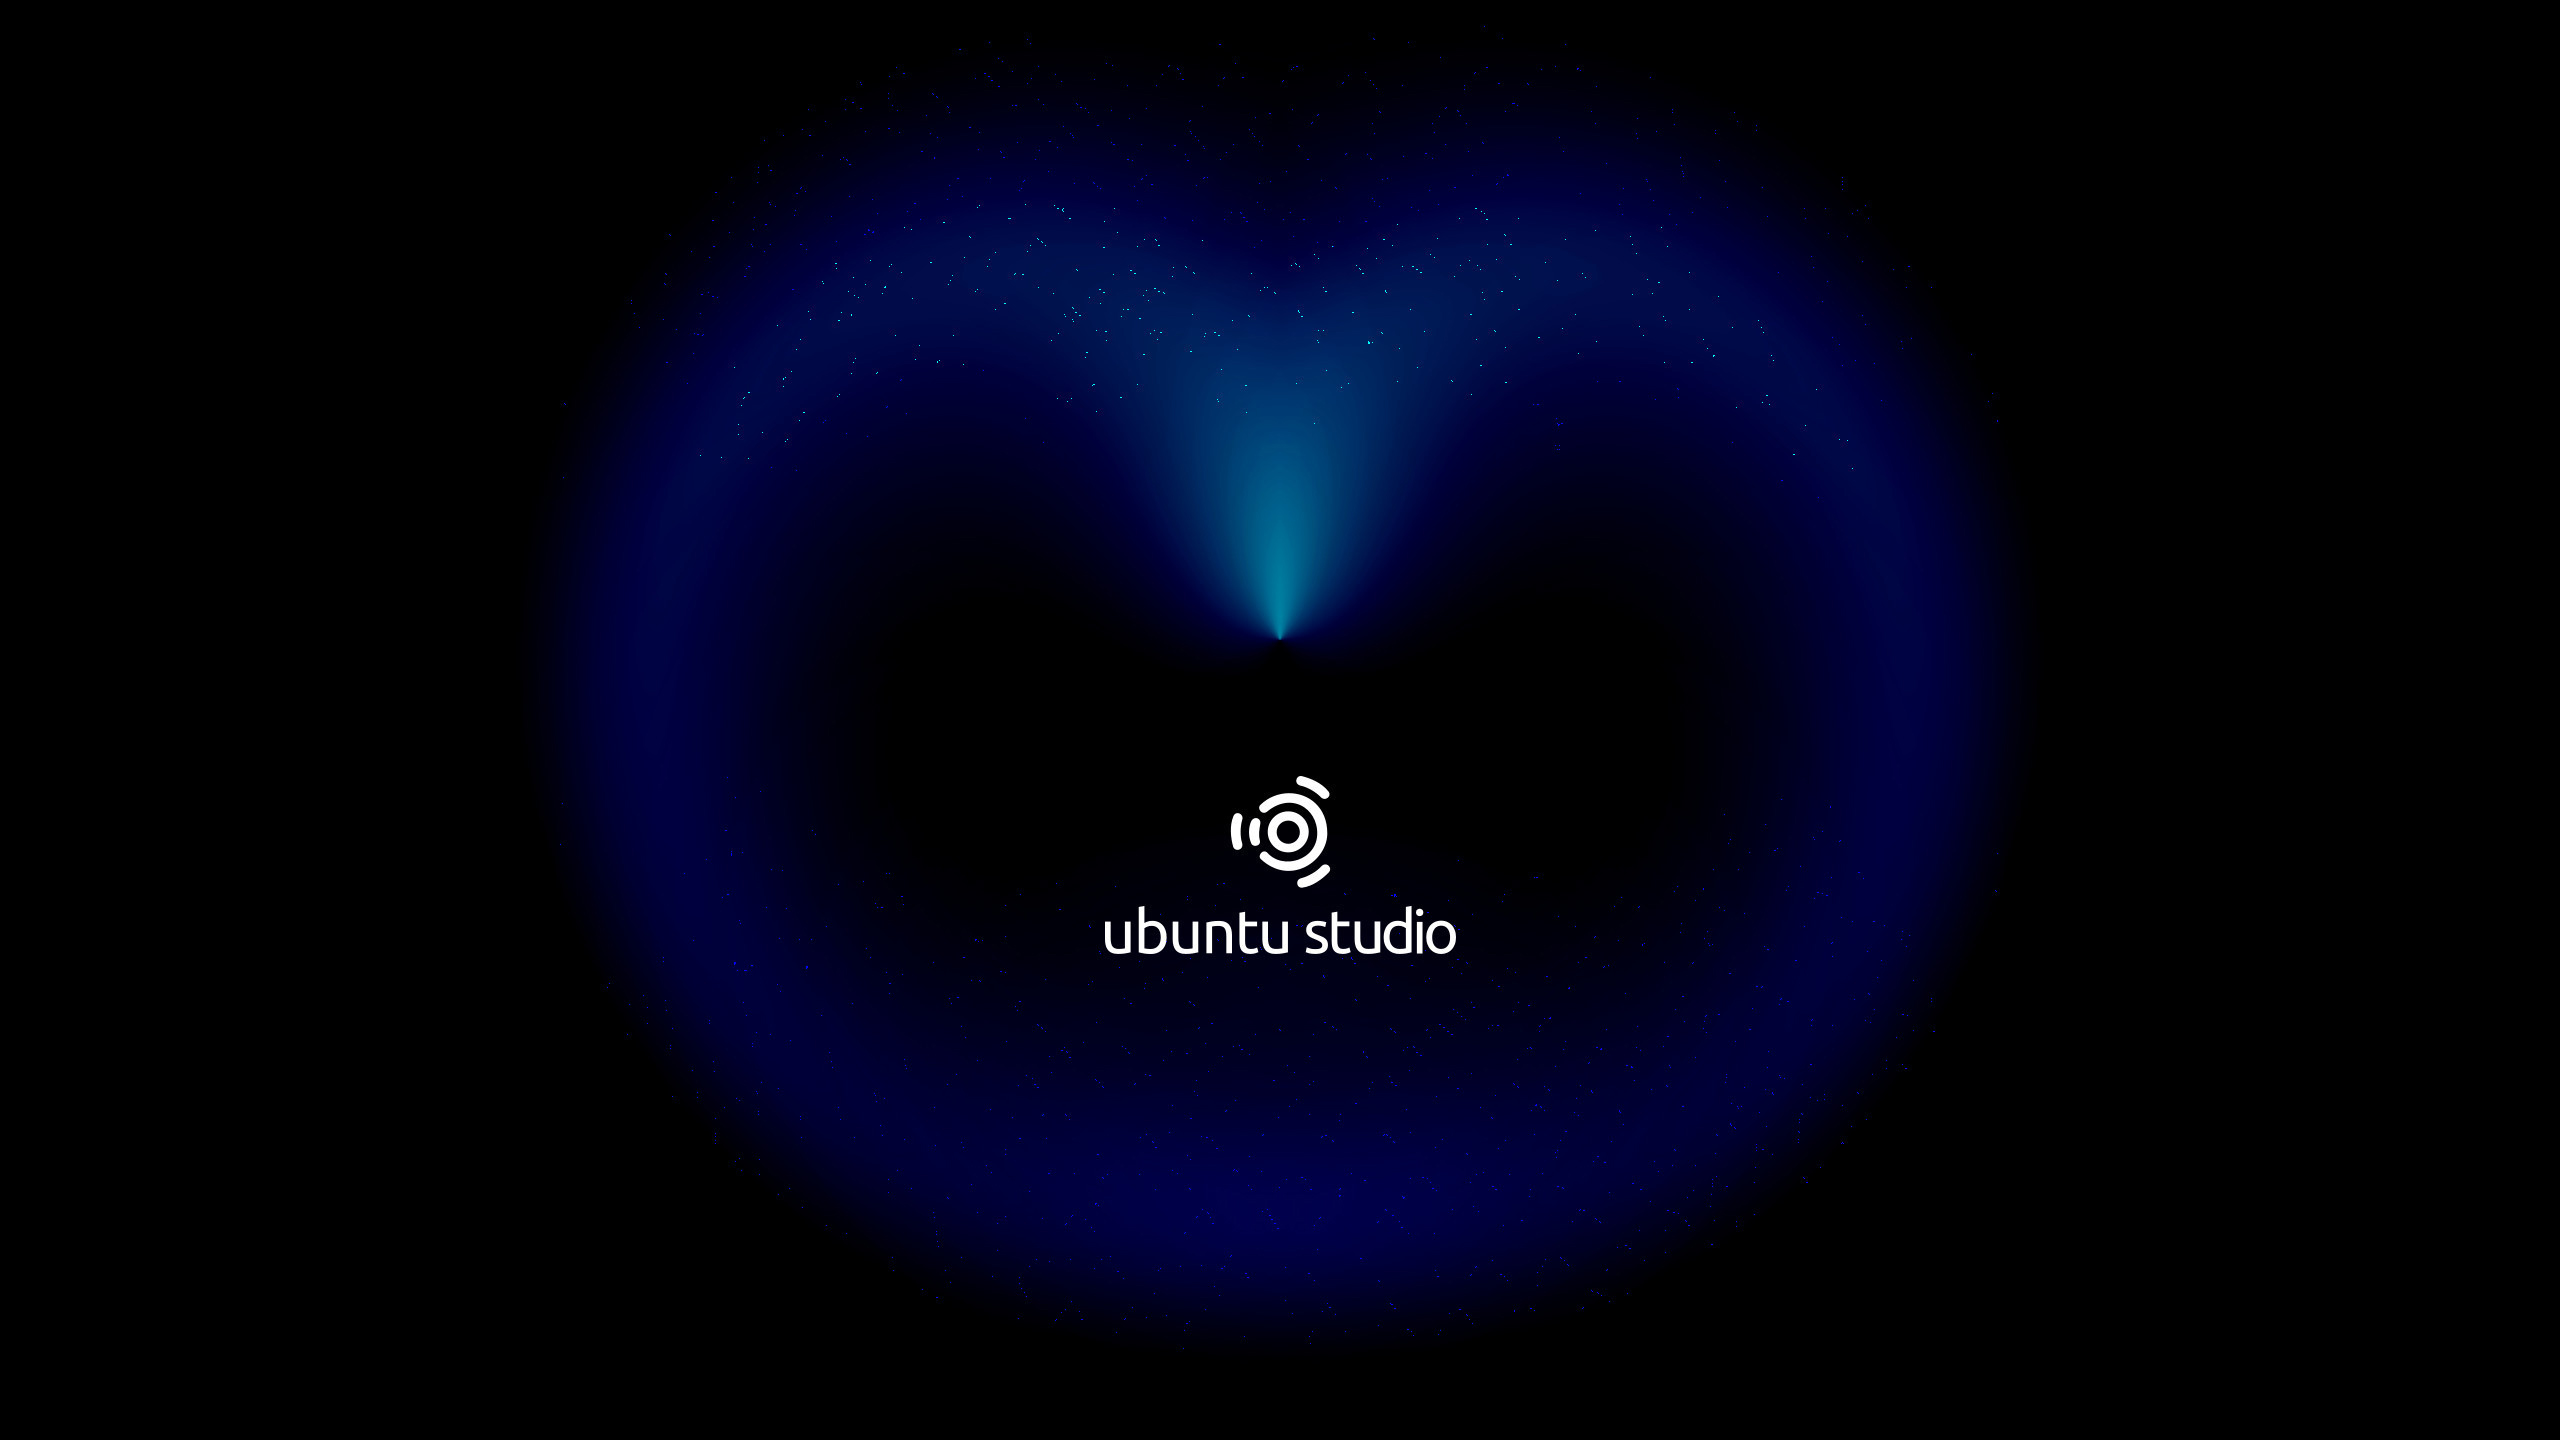 ubuntu studio Wallpapers